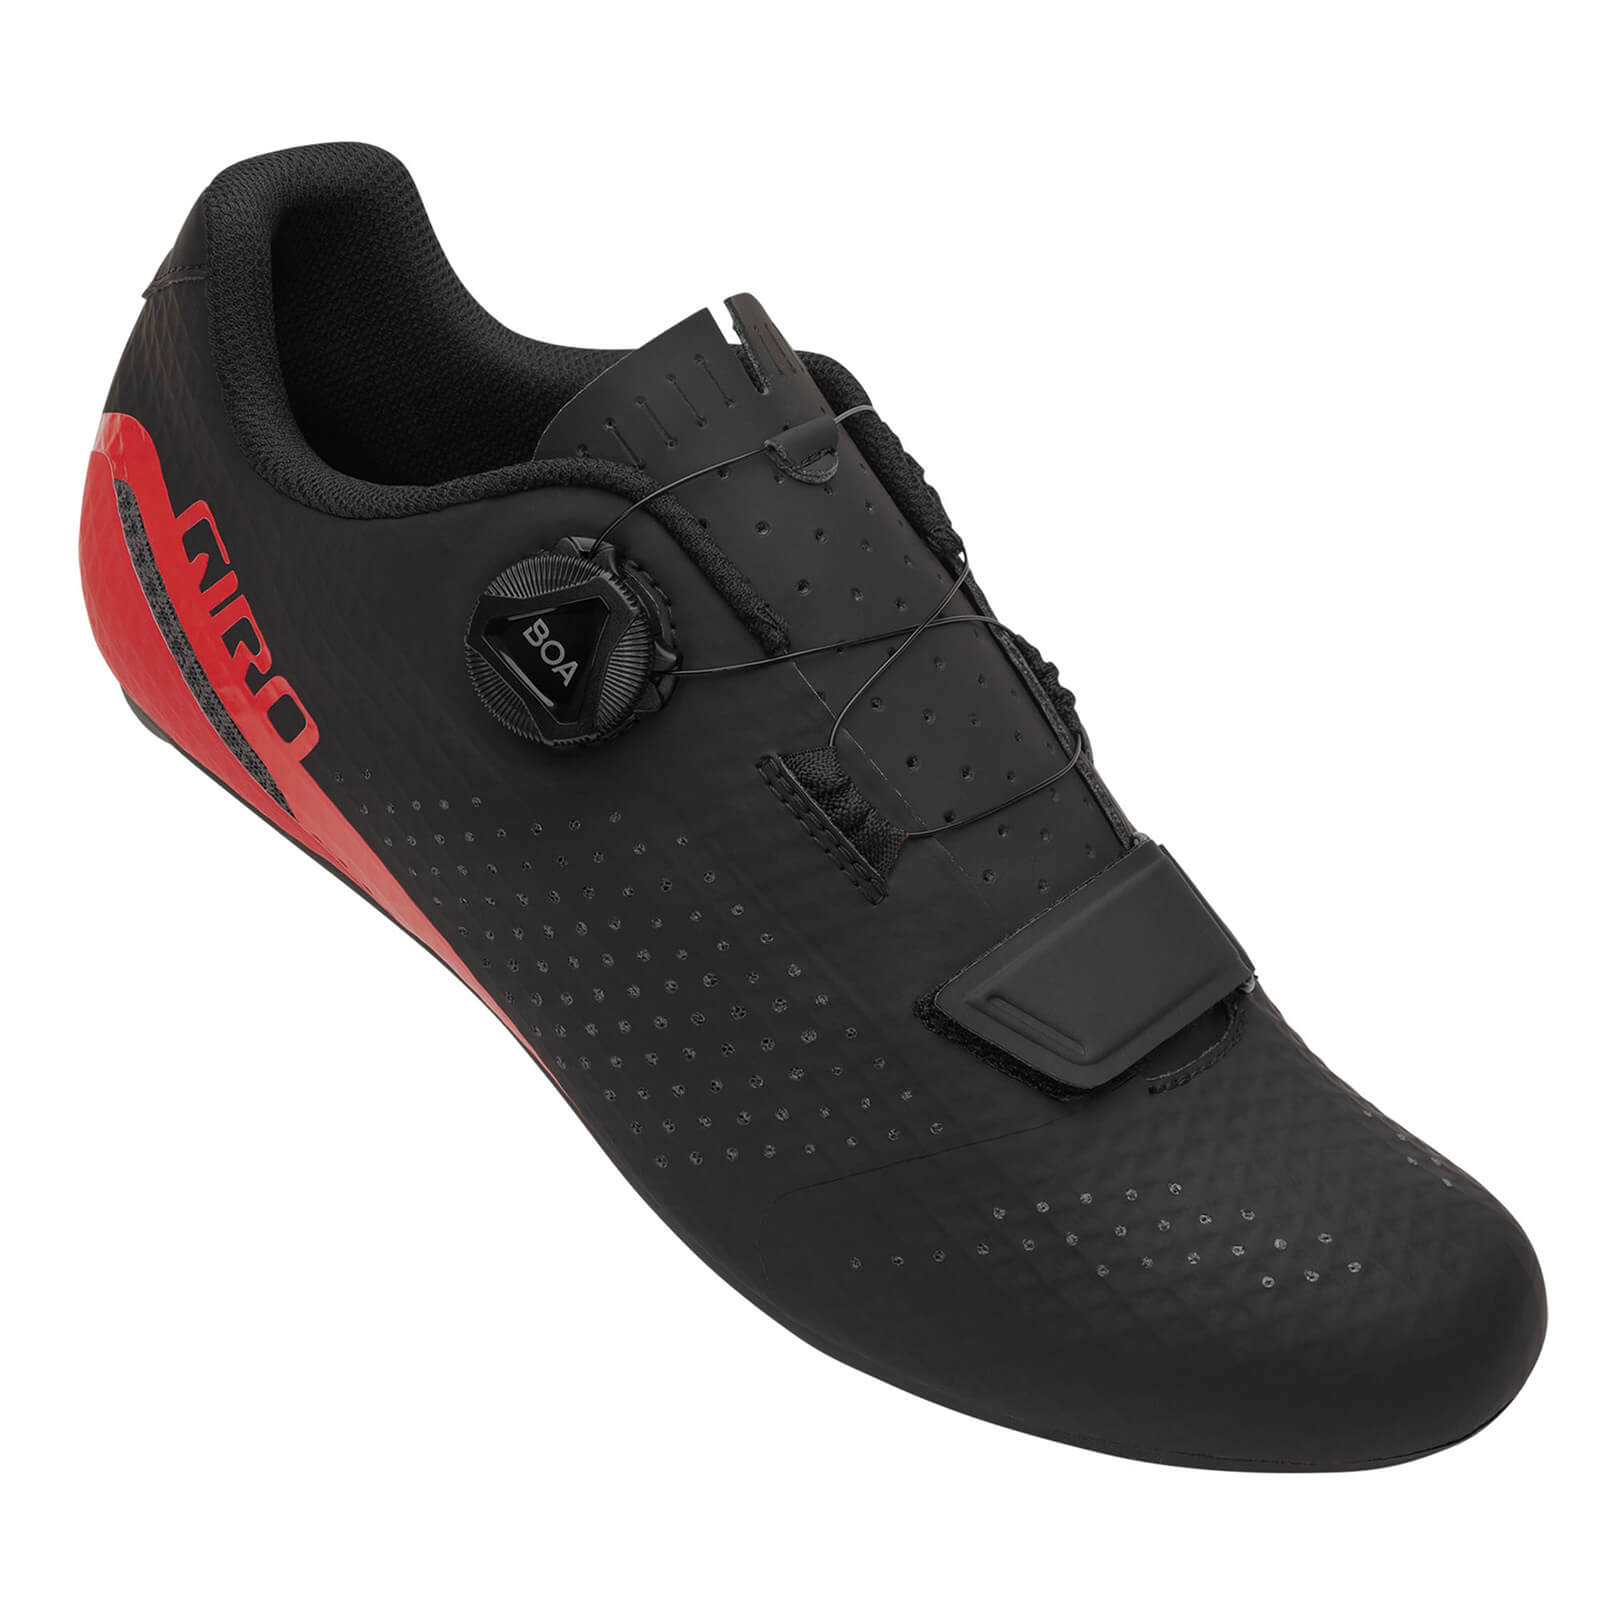 Giro Cadet Road Shoes – EU 43 – Black/Bright Red